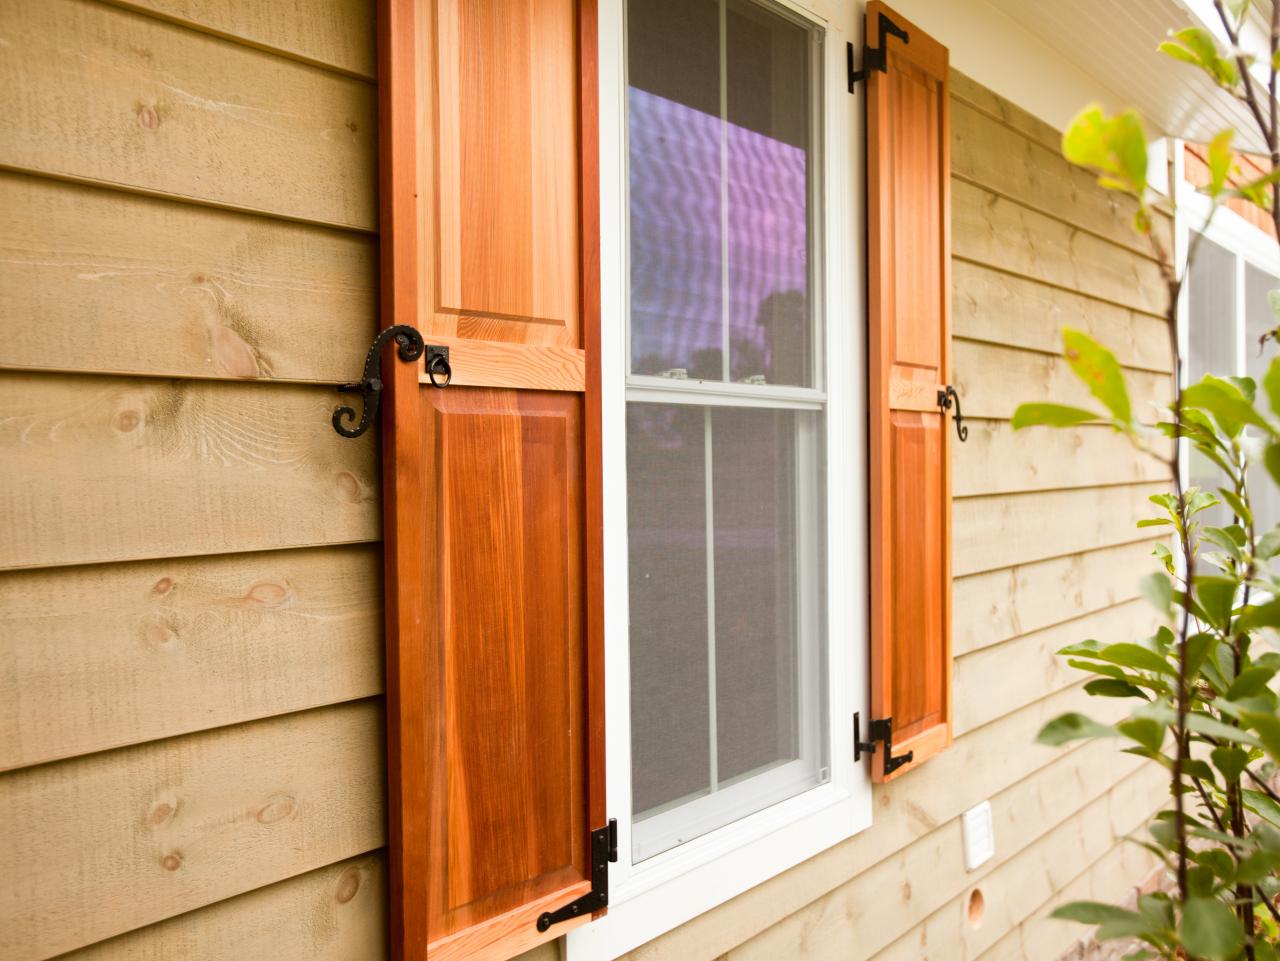 Wood exterior shutter panel